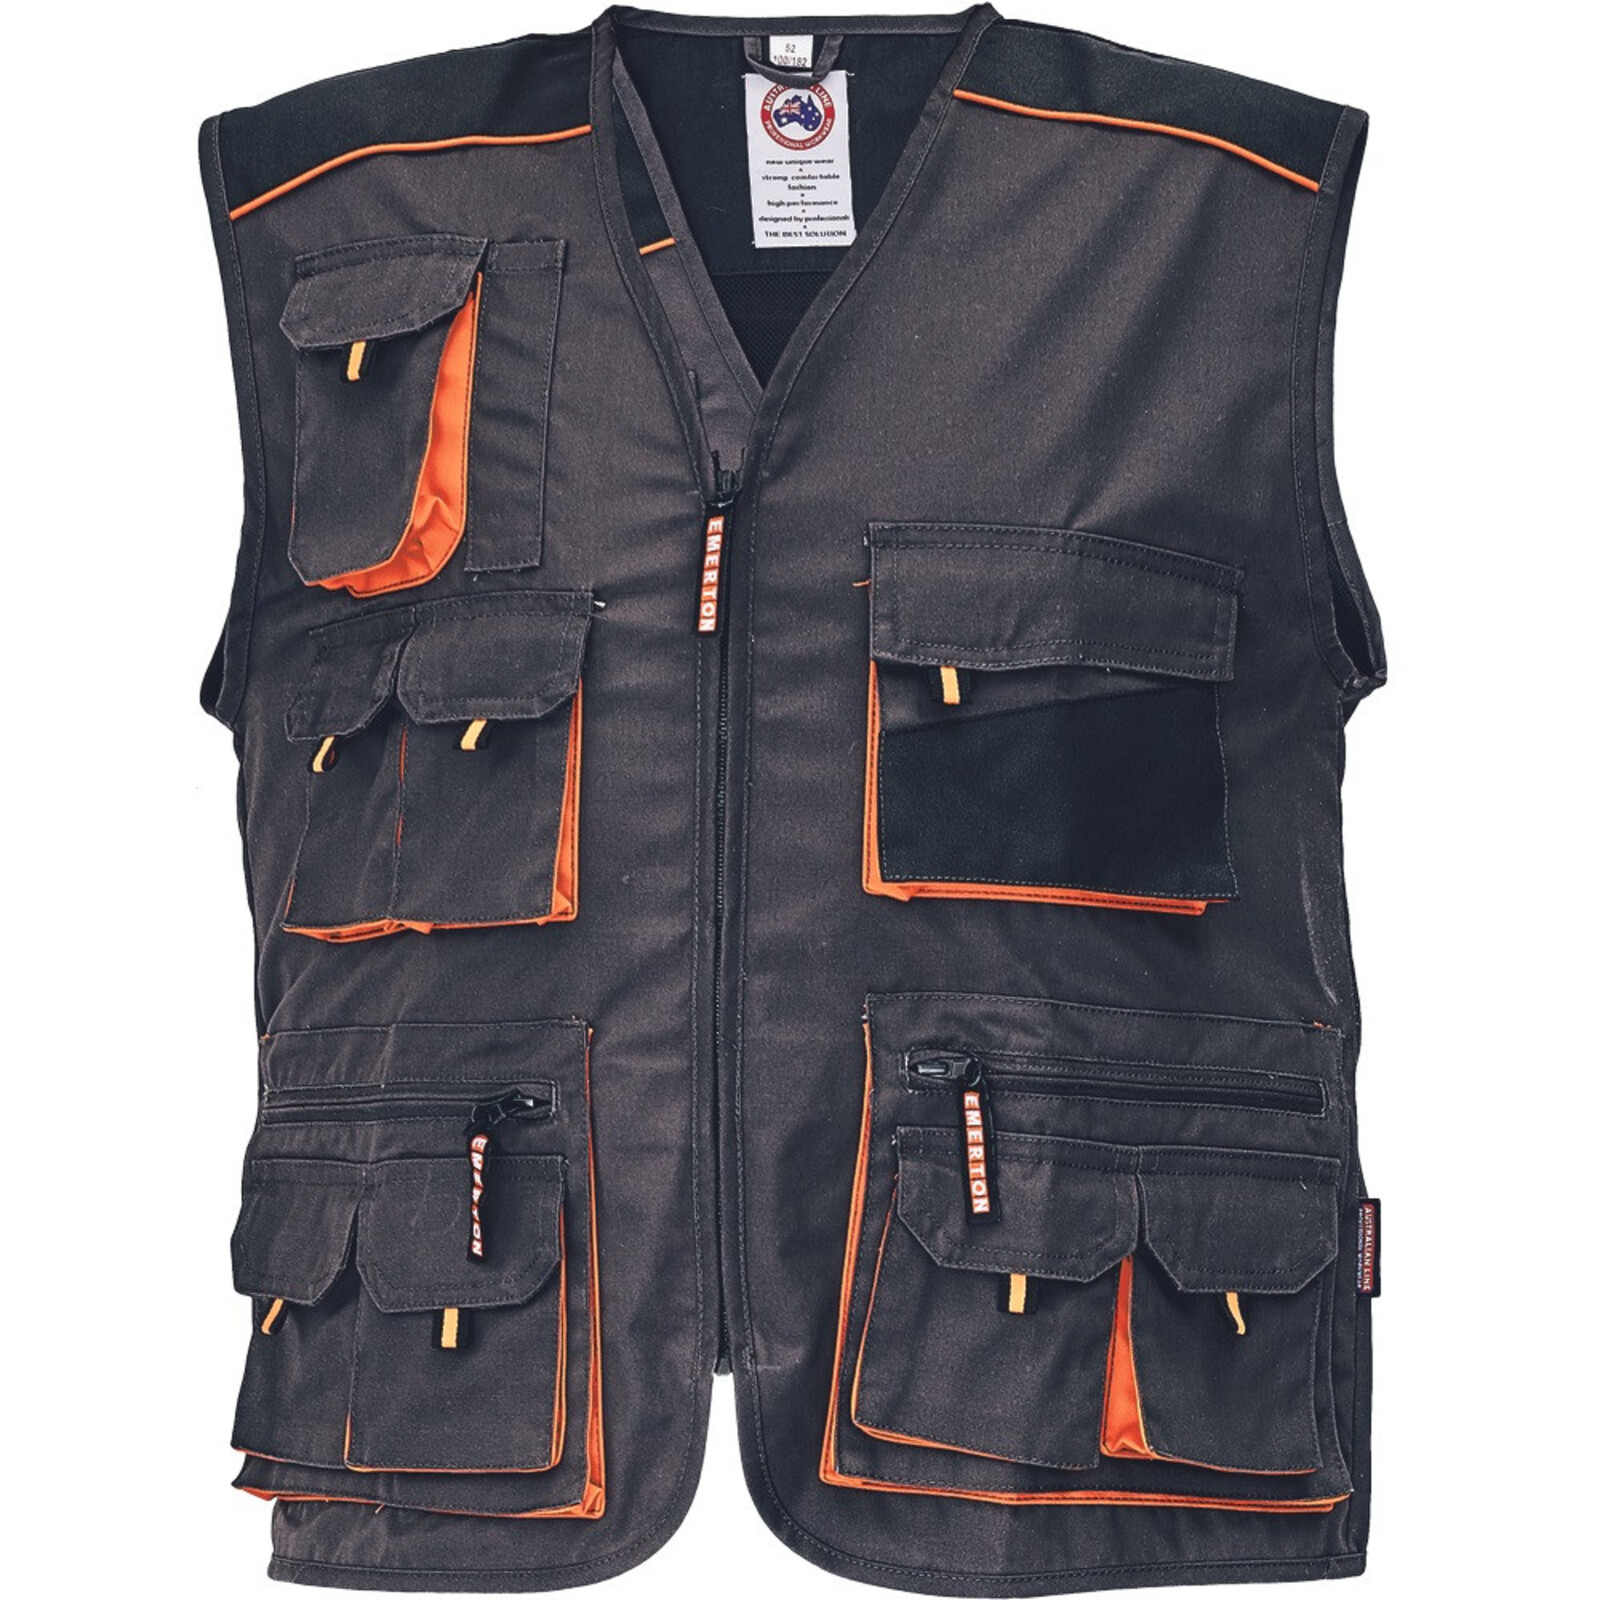 Odolná montérková vesta Emerton pánska - veľkosť: 54, farba: čierna/oranžová